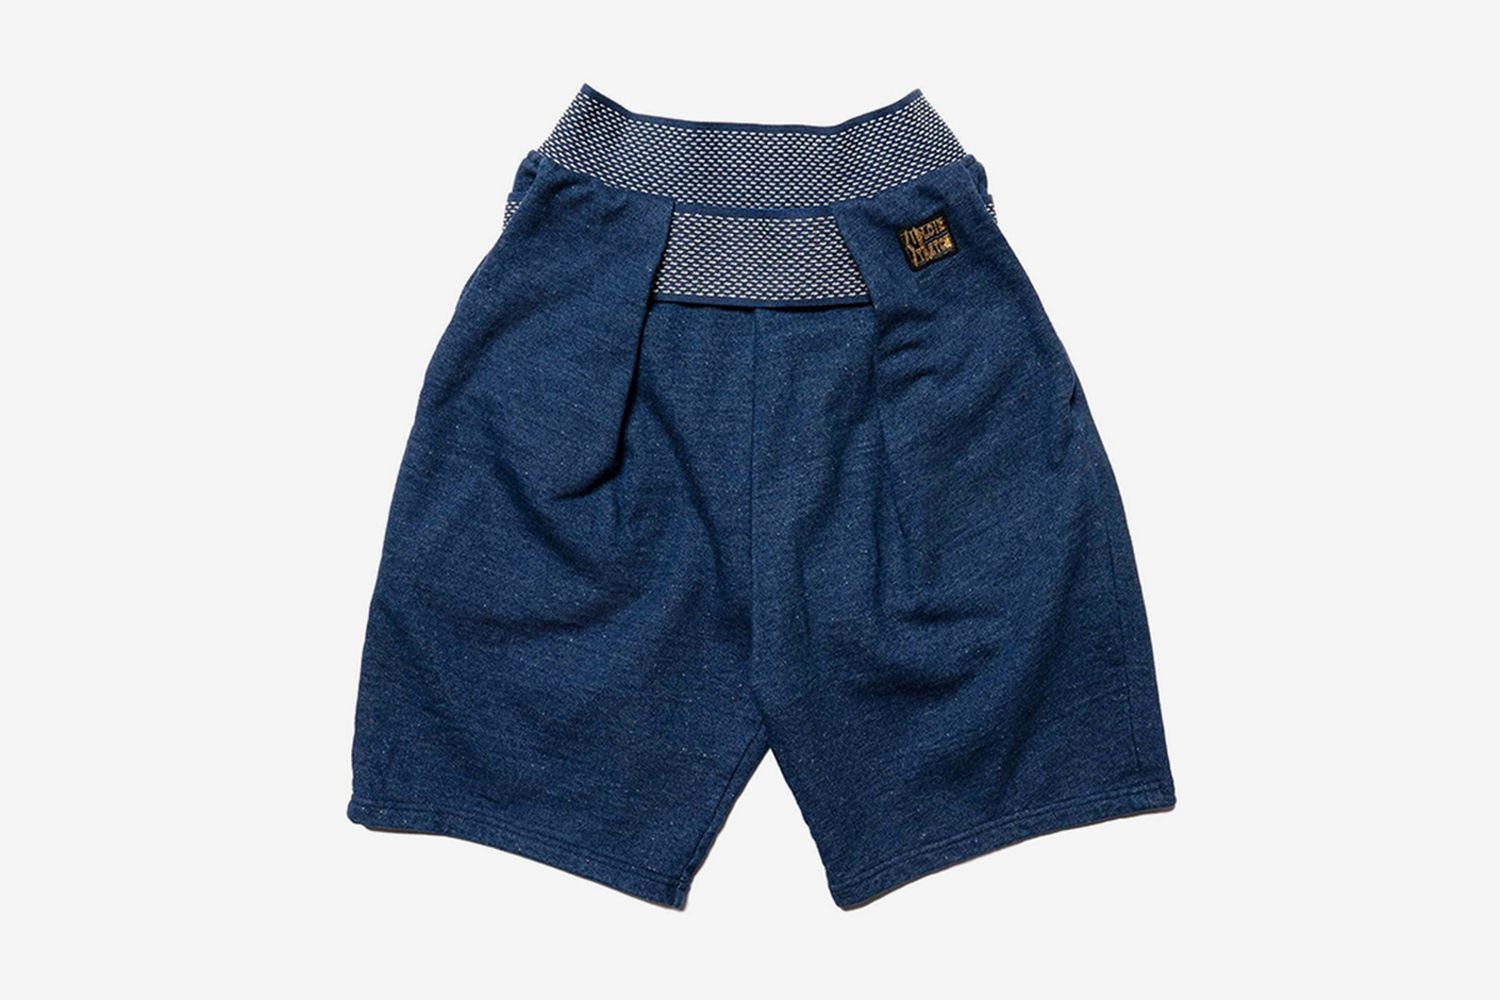 IDG Fleece Knit Shimokita Shorts